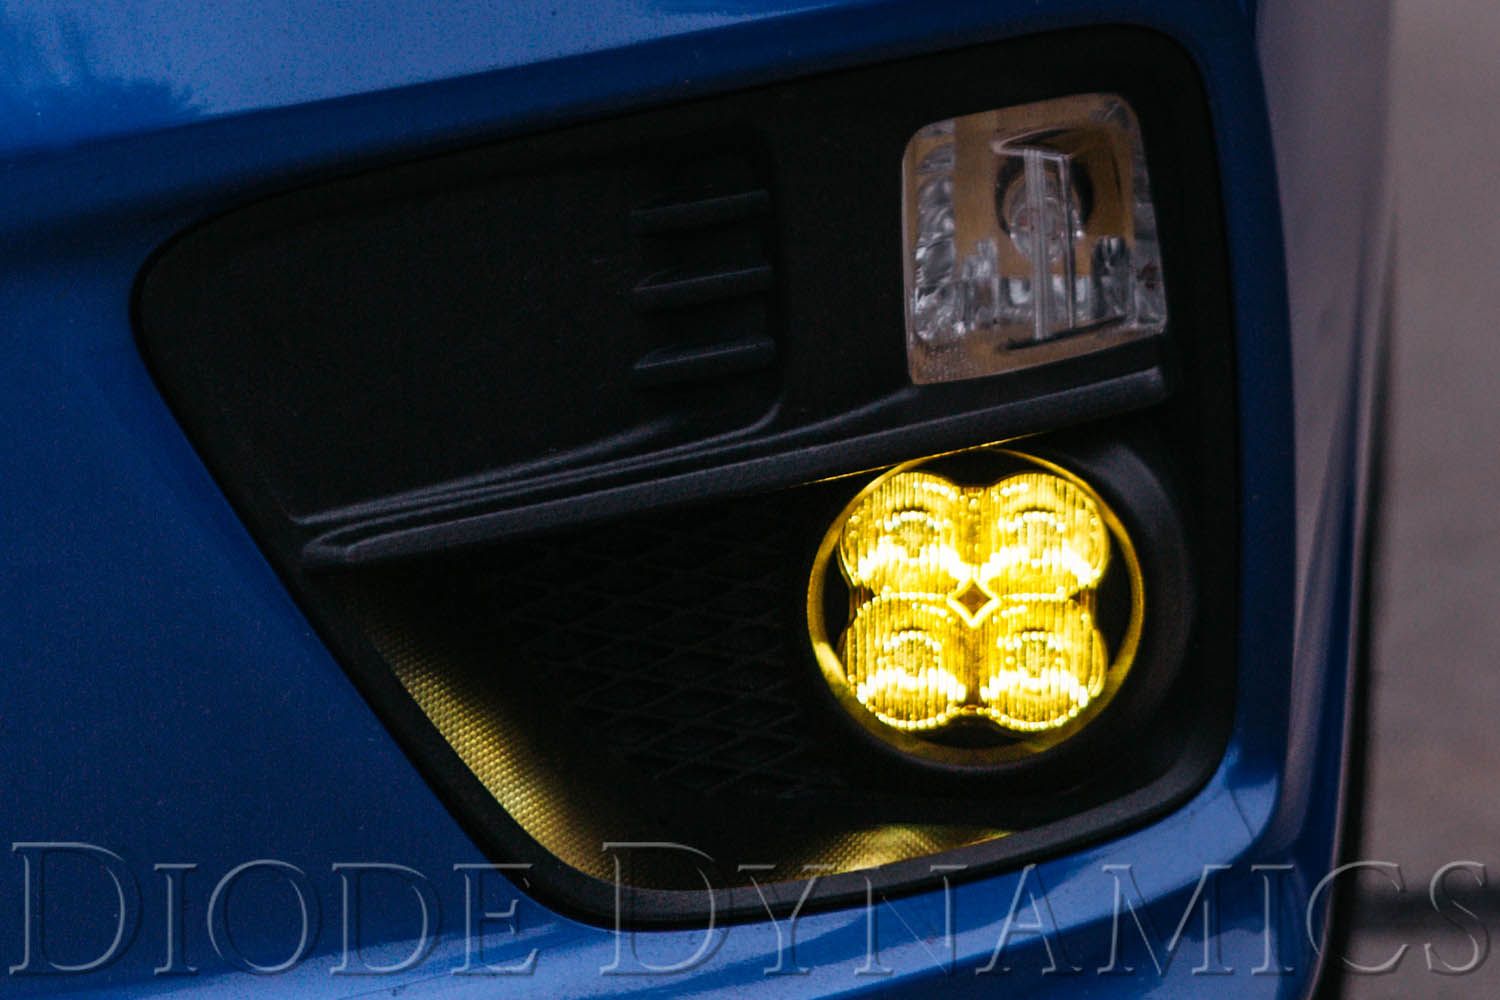 SS3 LED Fog Light Kit For 2013-2015 Honda Crosstour